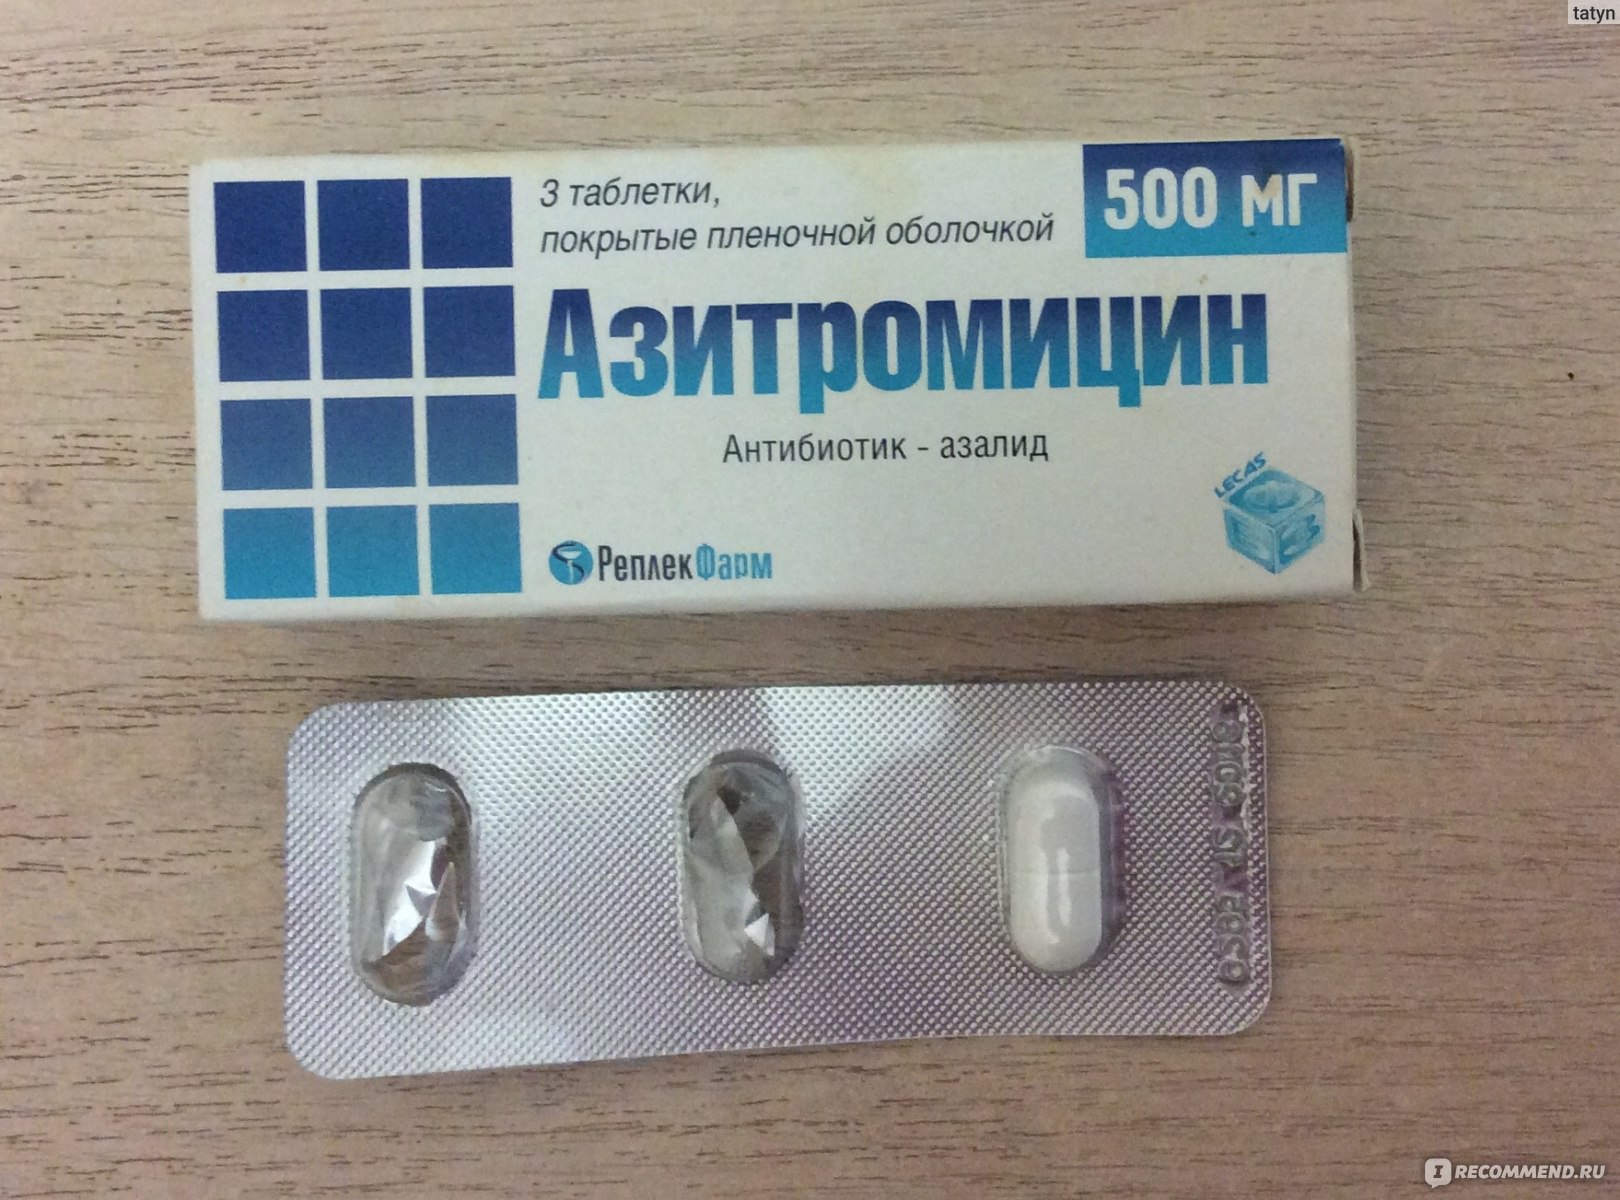 Антибиотик на букву с. Антибиотик Азитромицин 500 мг. Антибиотик 3 таблетки в упаковке Азитромицин. Антибиотик от кашля 3 таблетки название. Сильный антибиотик от простуды 3 таблетки.